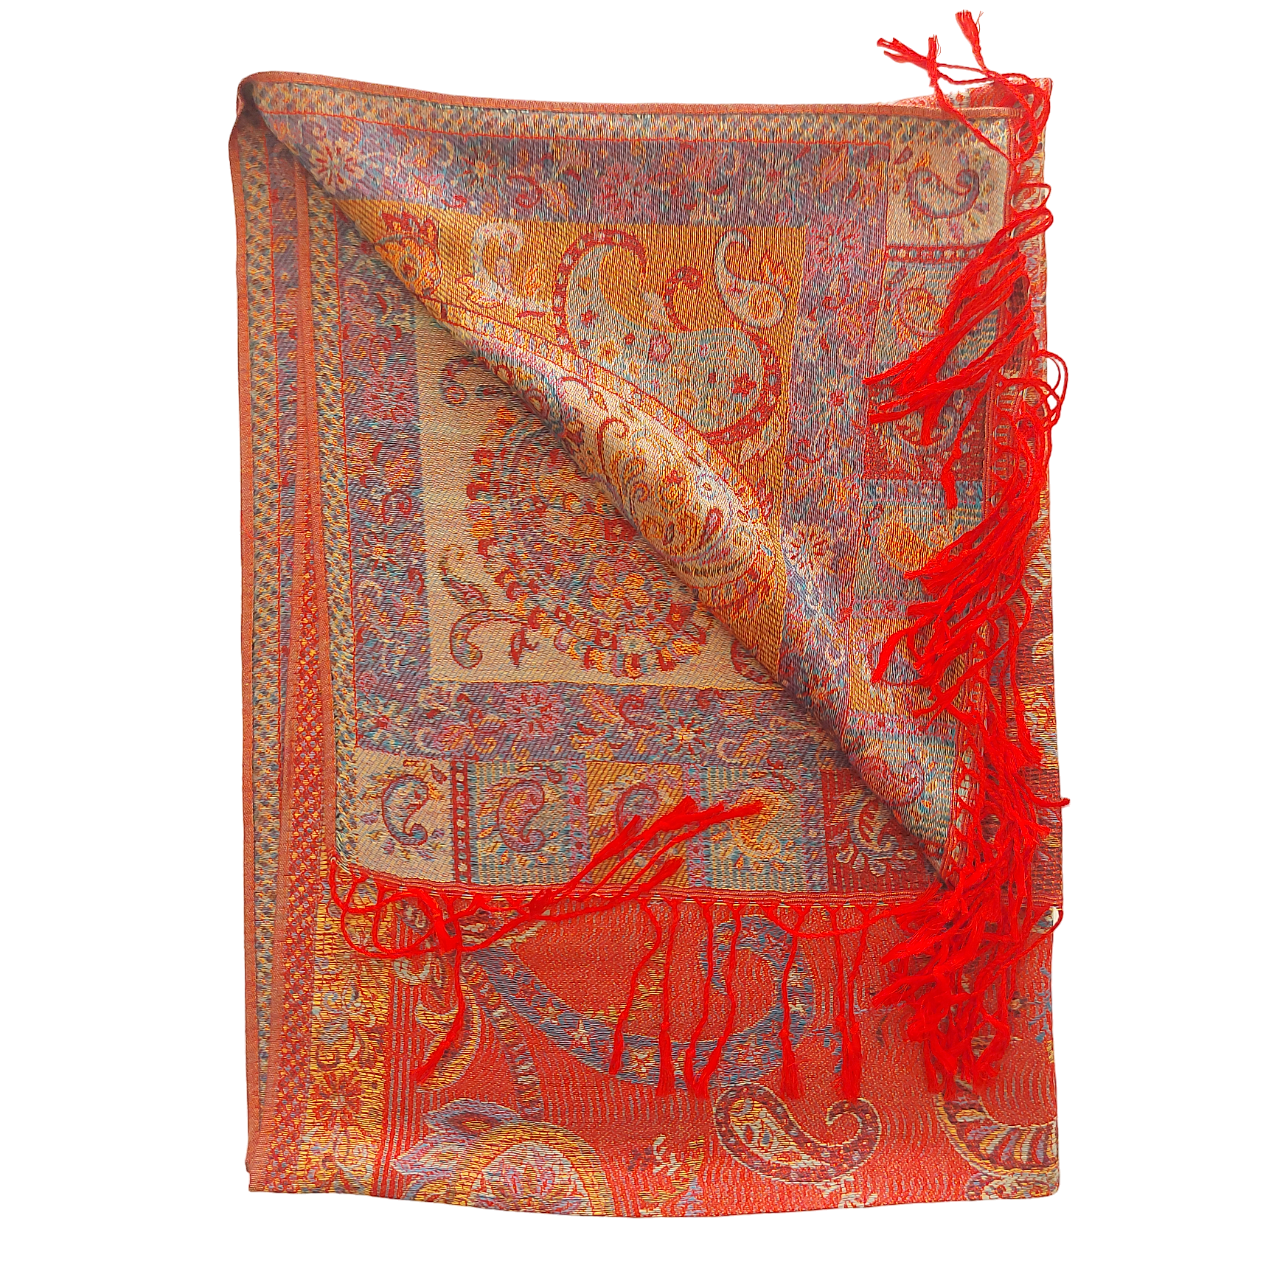 Étole tissée rouge avec motif Cachemire floral. Écharpe foulard inspiration Pashmina.